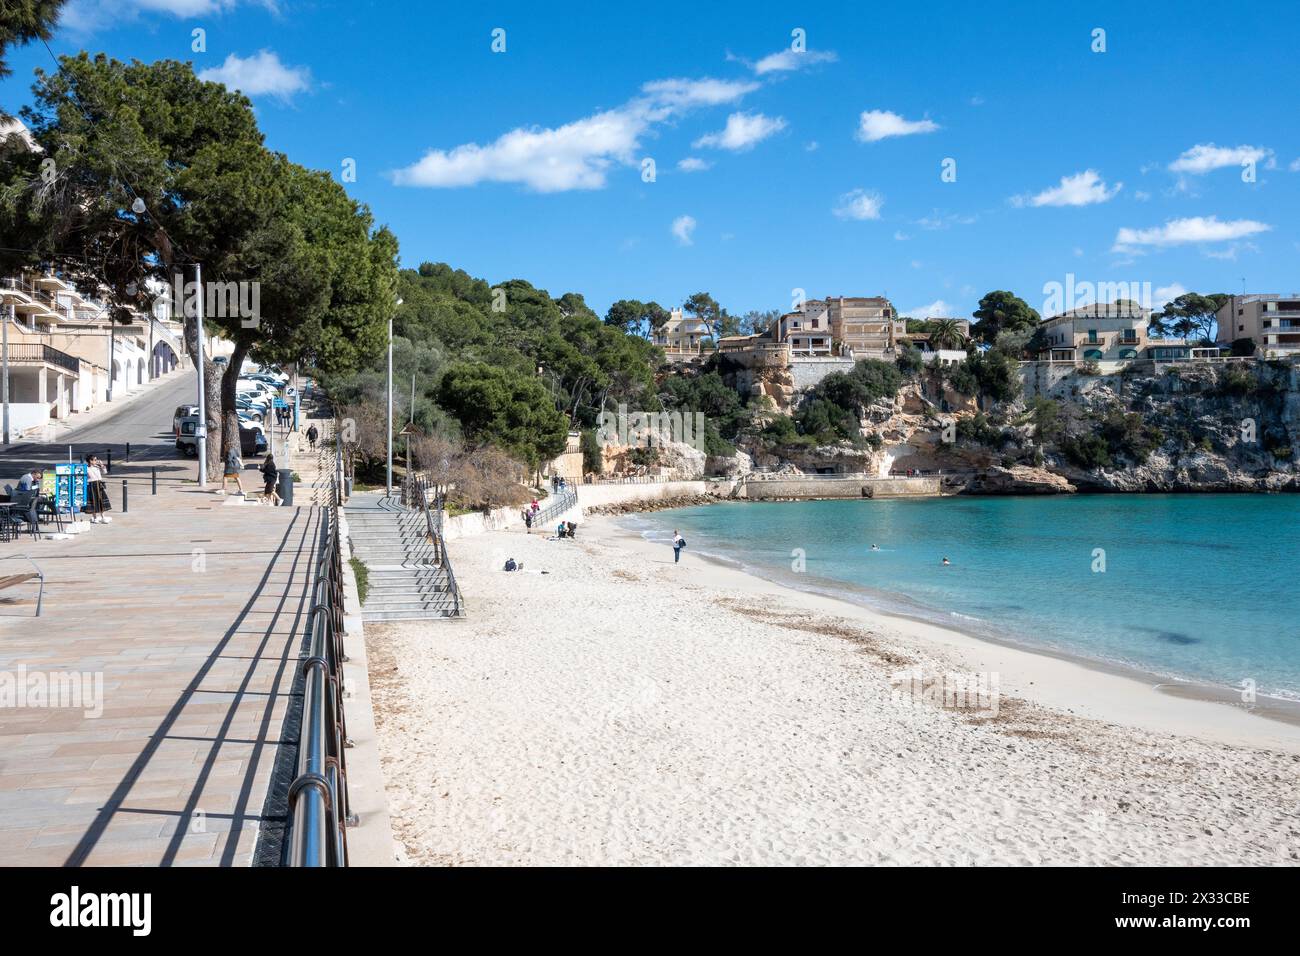 Maiorca, Isole Baleari, Spagna, Platja de Portocristo è una spiaggia di sabbia bianca nel centro di Porto Cristo, solo editoriale. Foto Stock